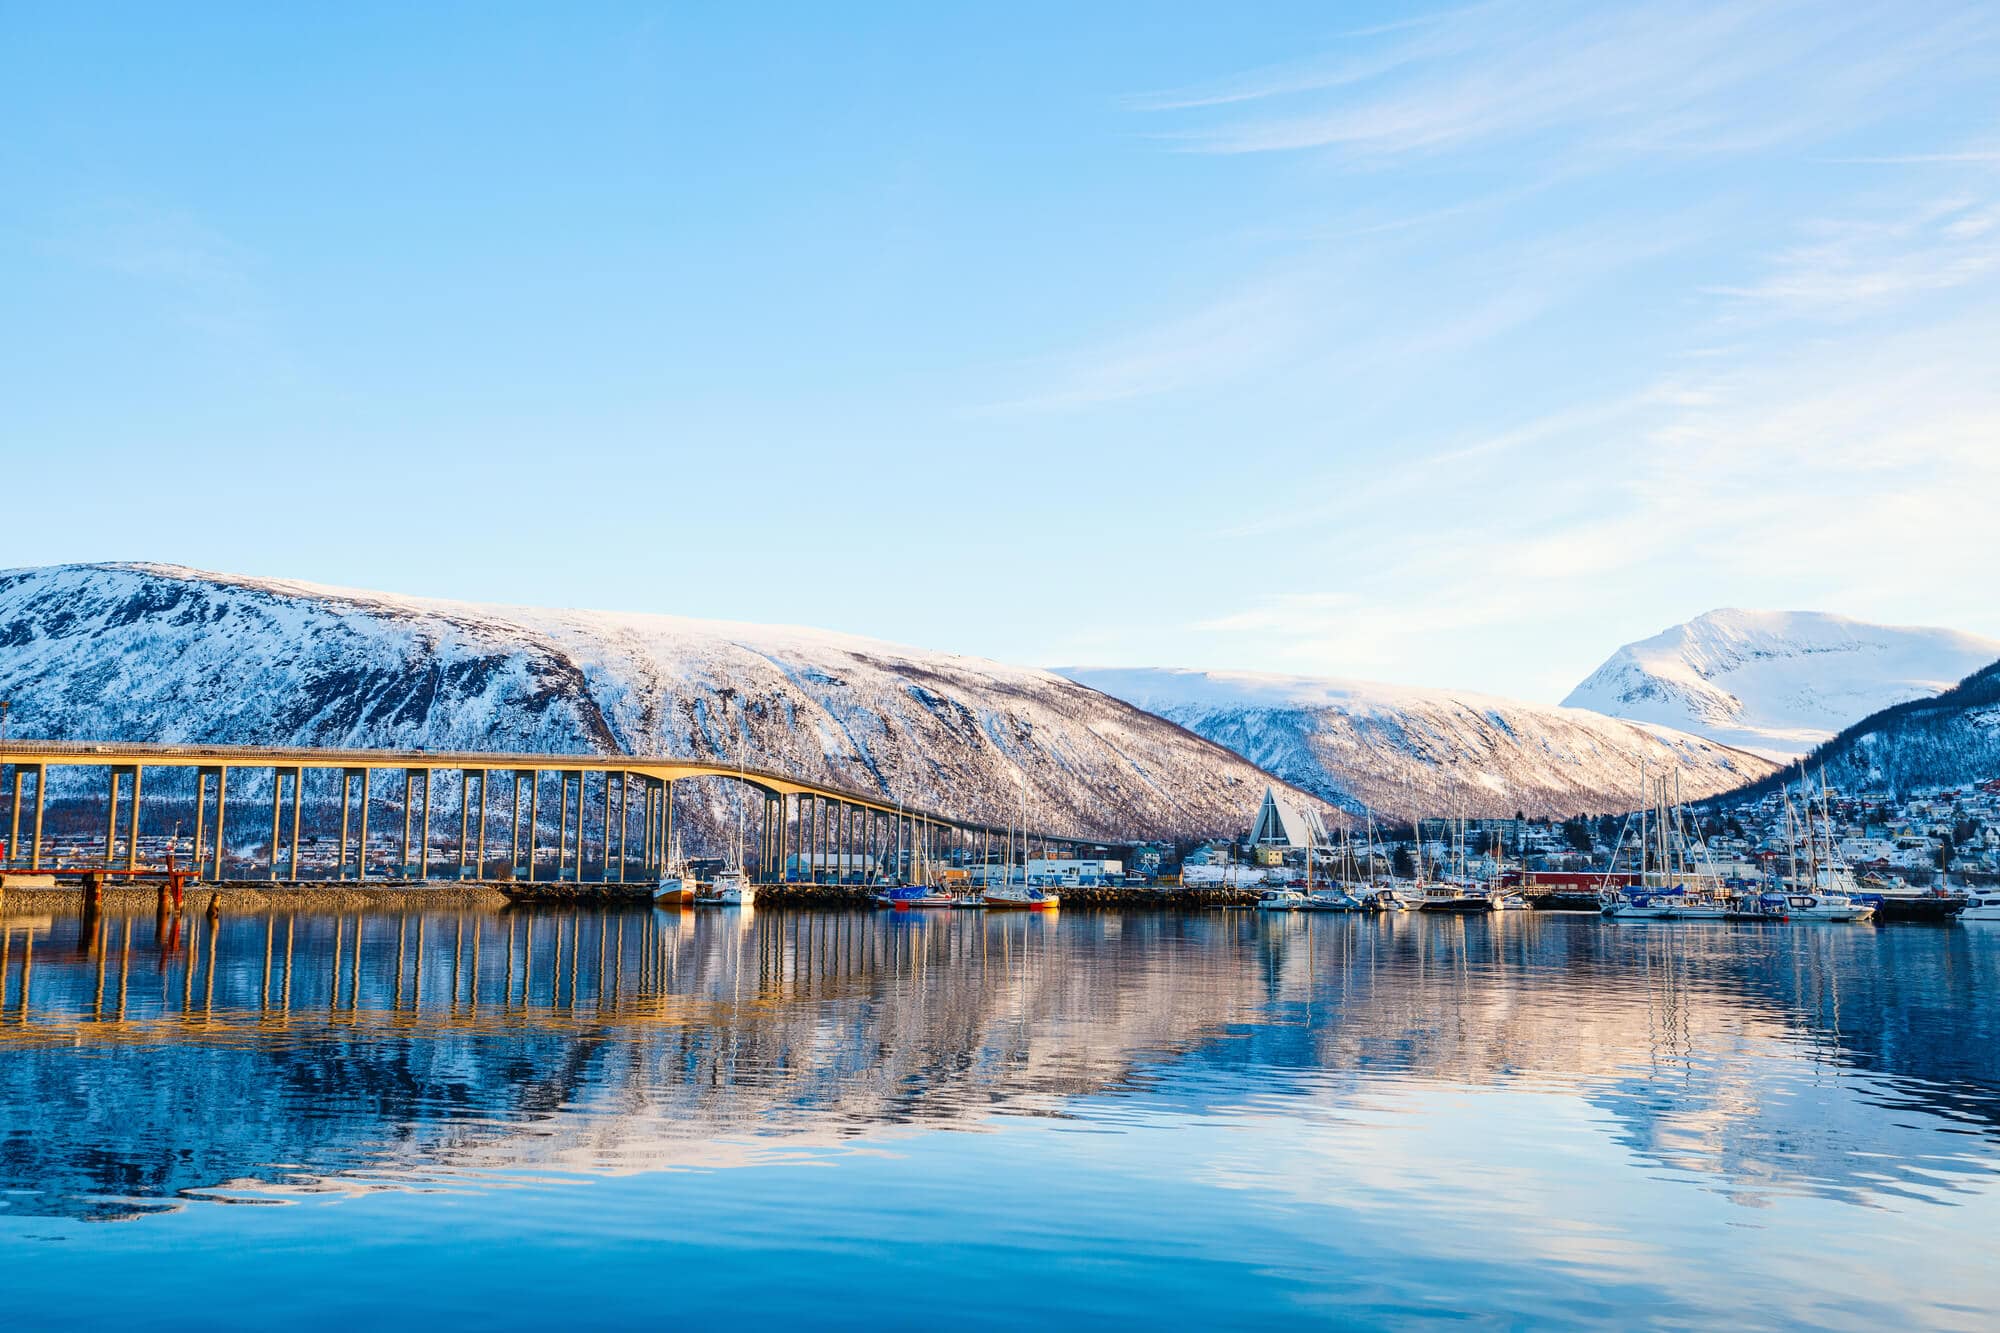 Top places to see and things to do in Norway - Winter in Tromsø #bucketlist #travelinspo #norway #tromsø #northernnorway